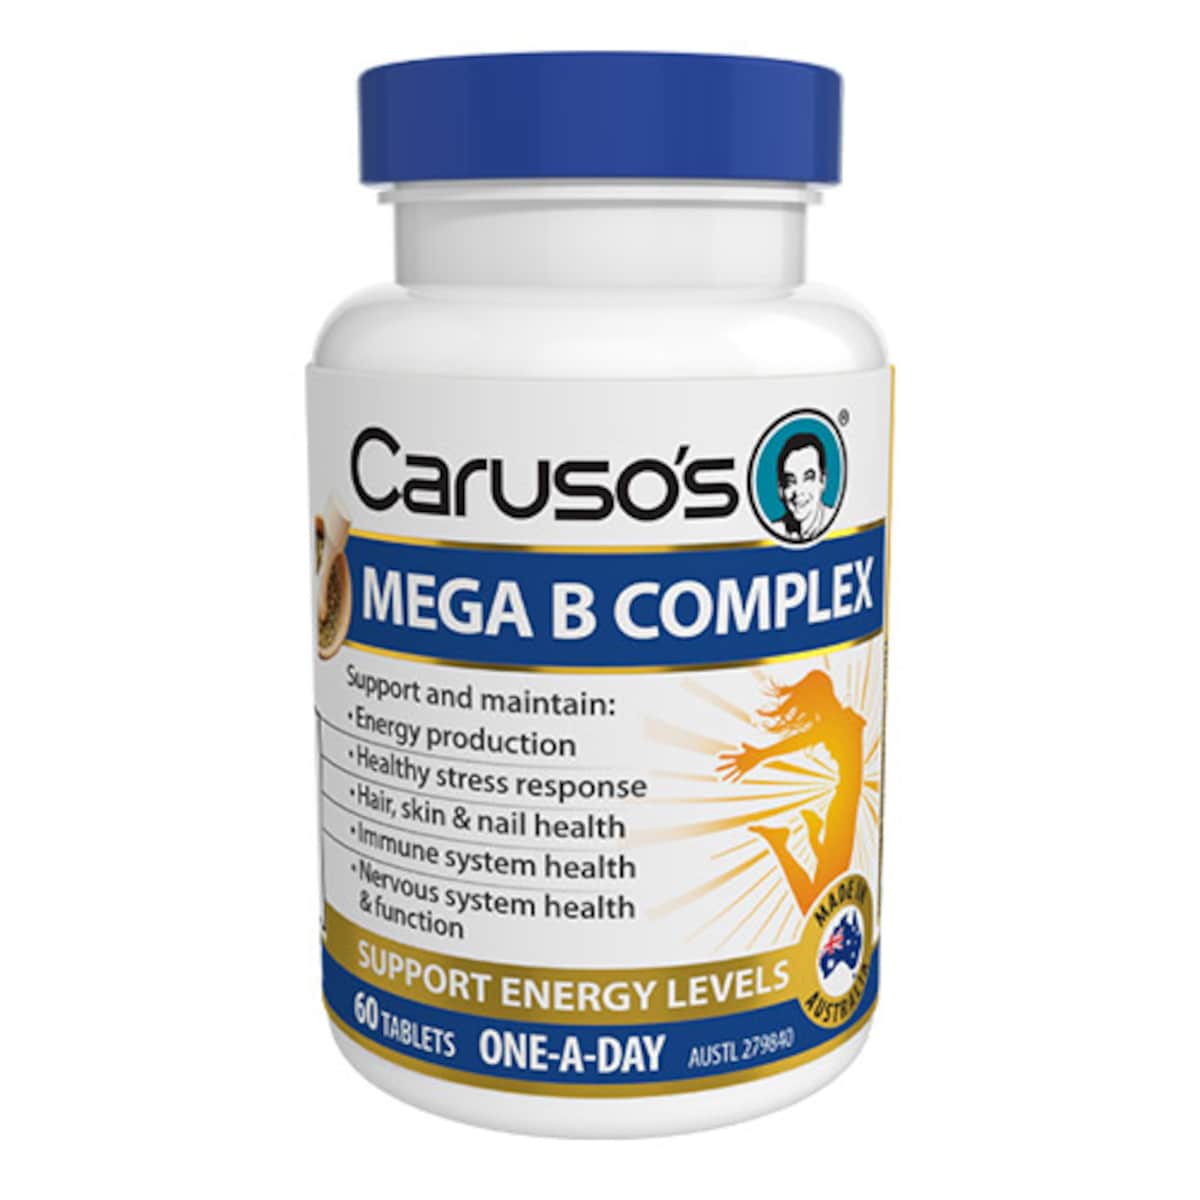 Carusos Mega B Complex 60 Tablets